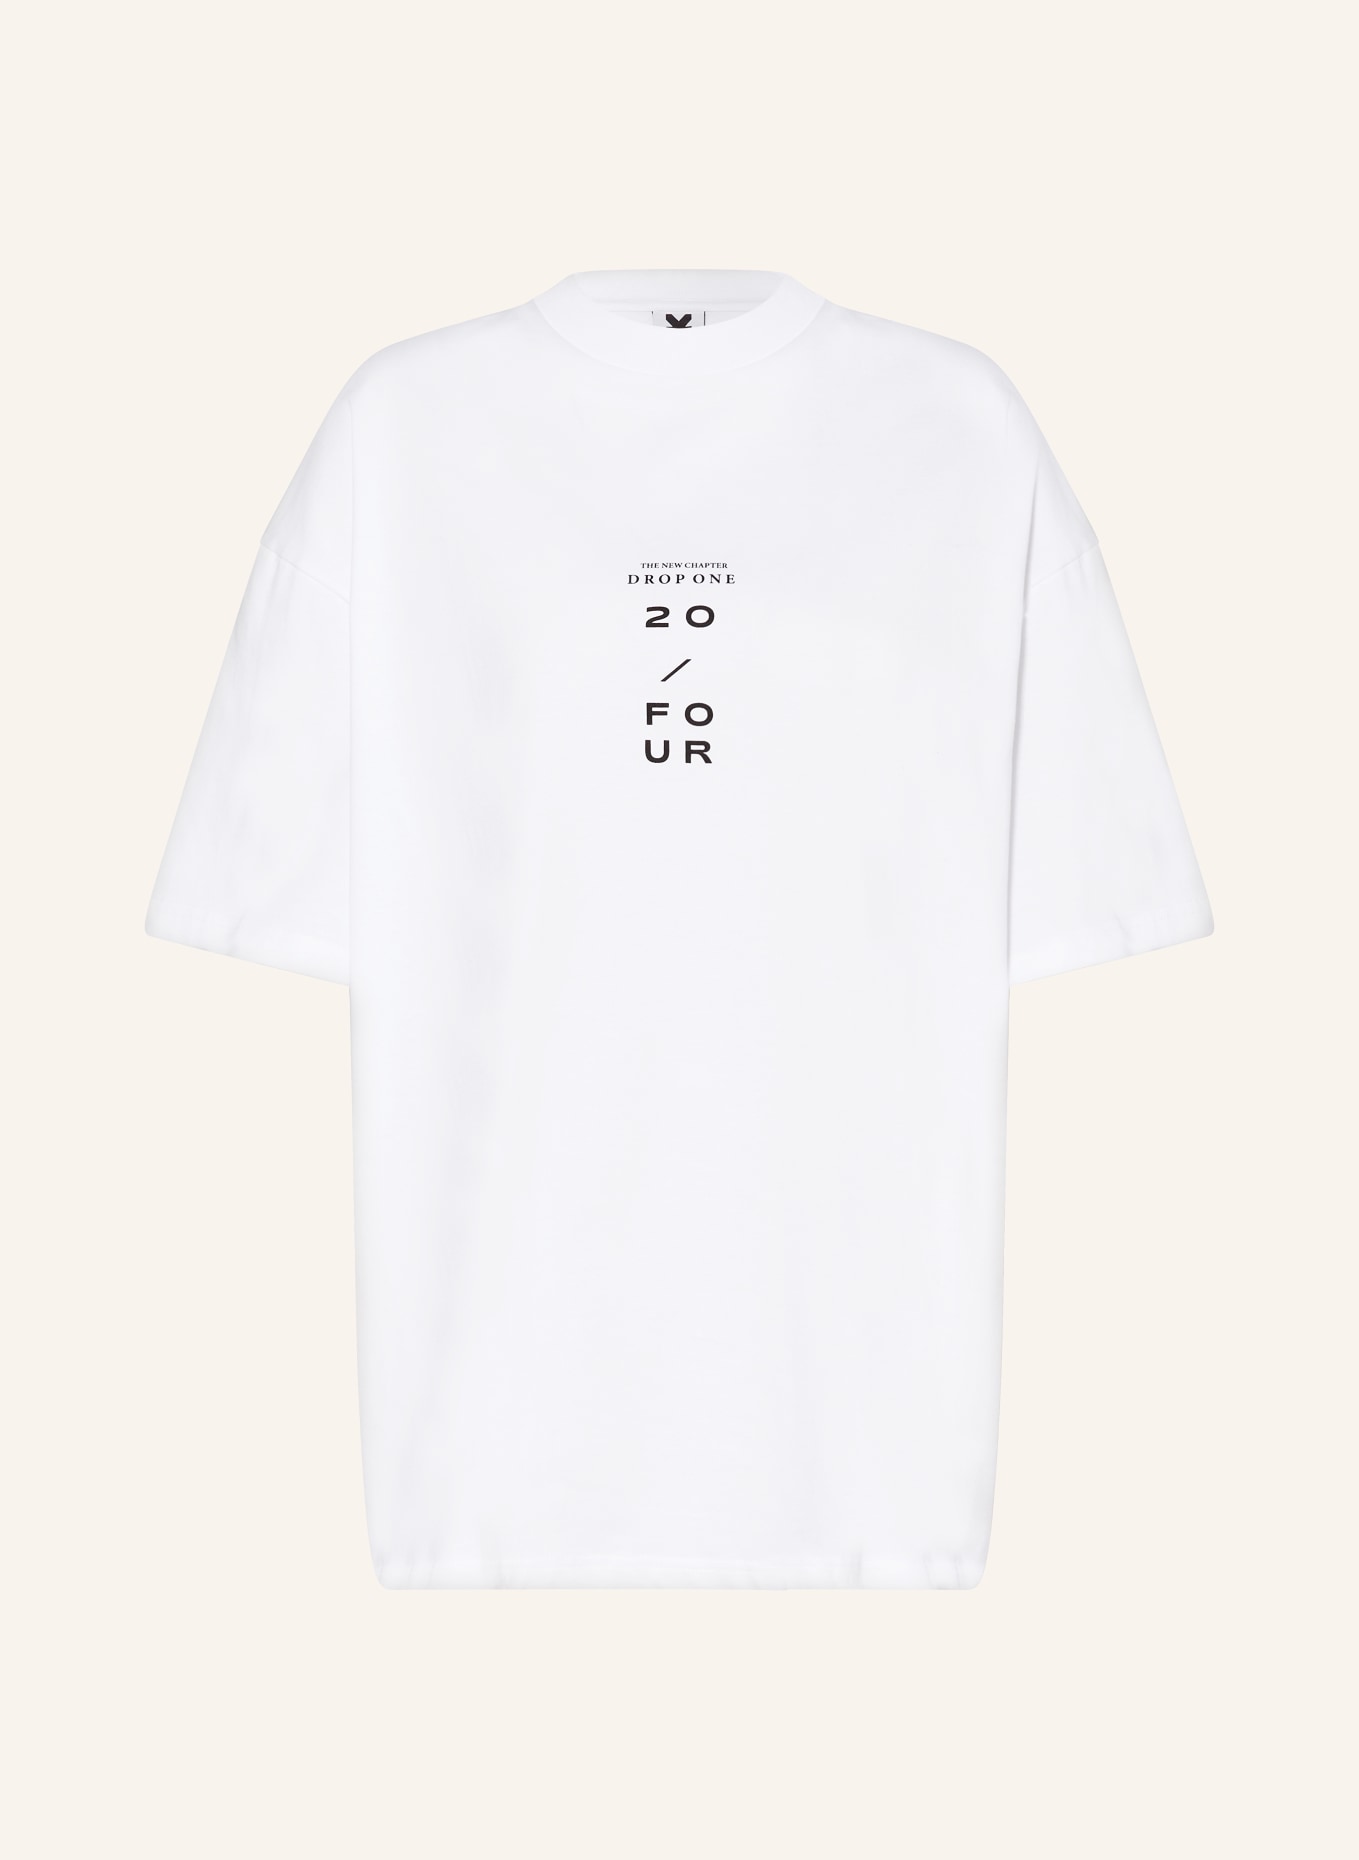 KARO KAUER Oversized shirt, Color: WHITE (Image 1)